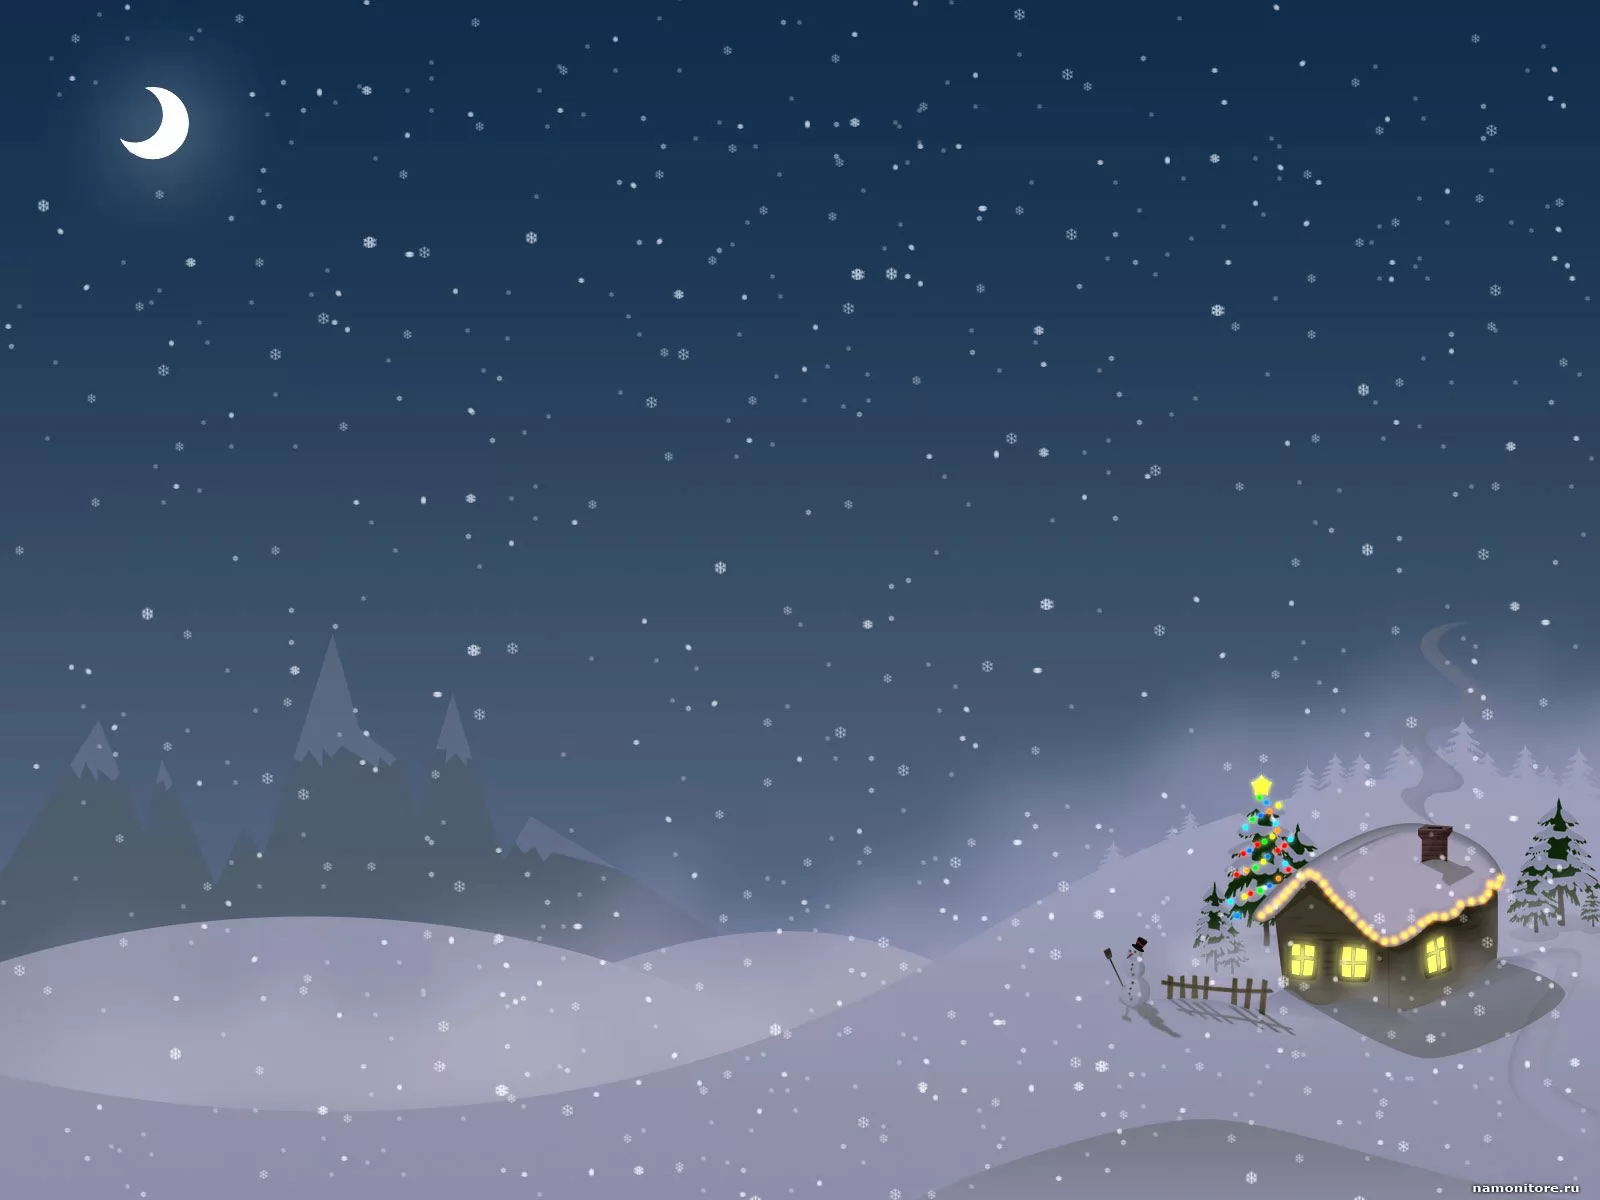 Домик в снегу, зима, лучшее, Новый год, ночь, праздники, рисованное, синее х